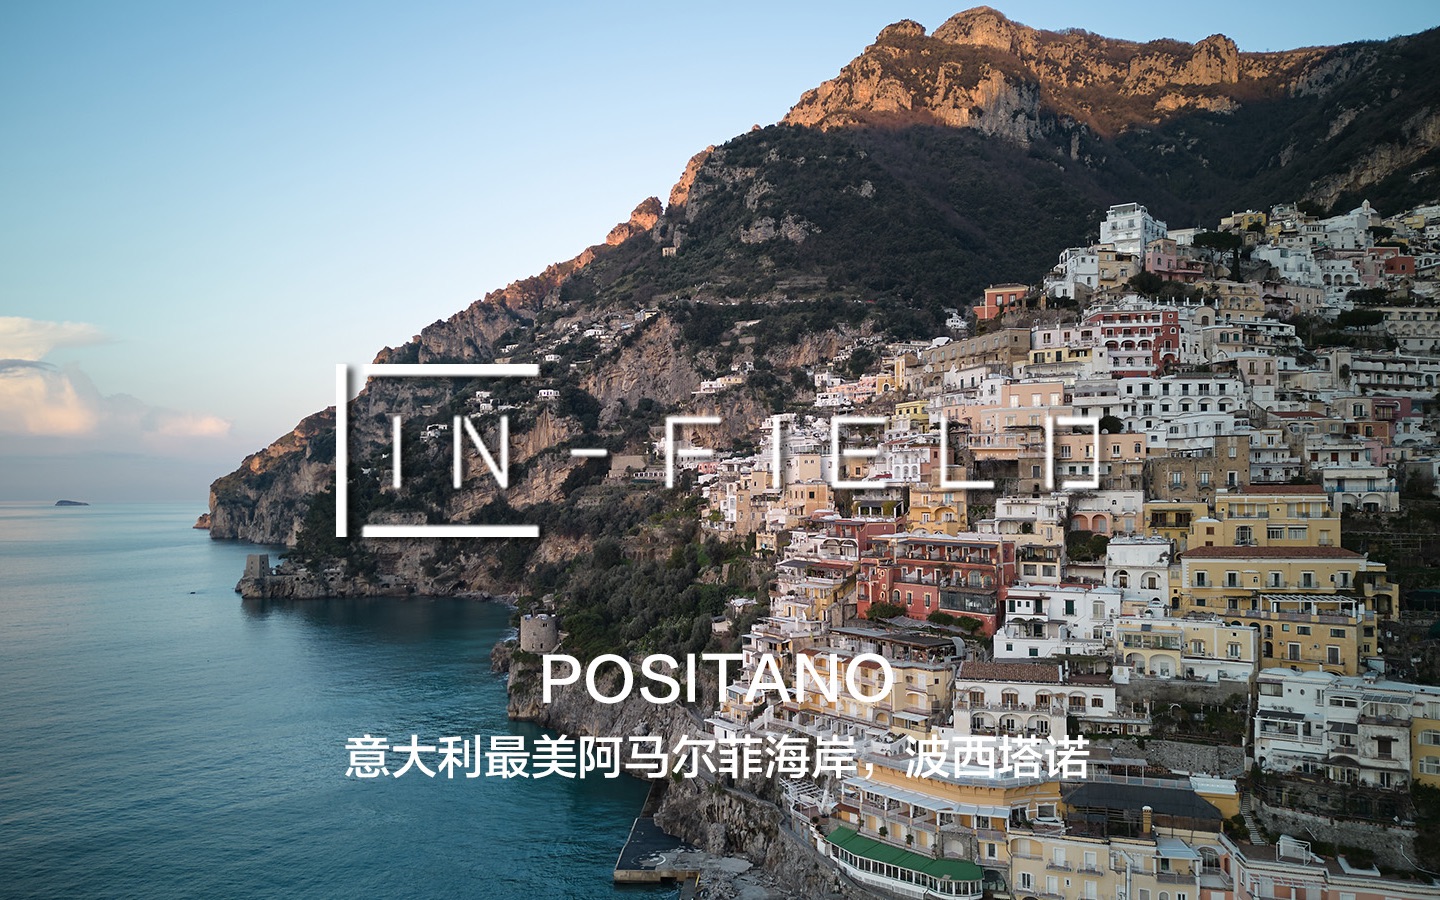 在淡季去到了心目中最美的海边小镇positano,位于意大利阿马尔菲喊抖